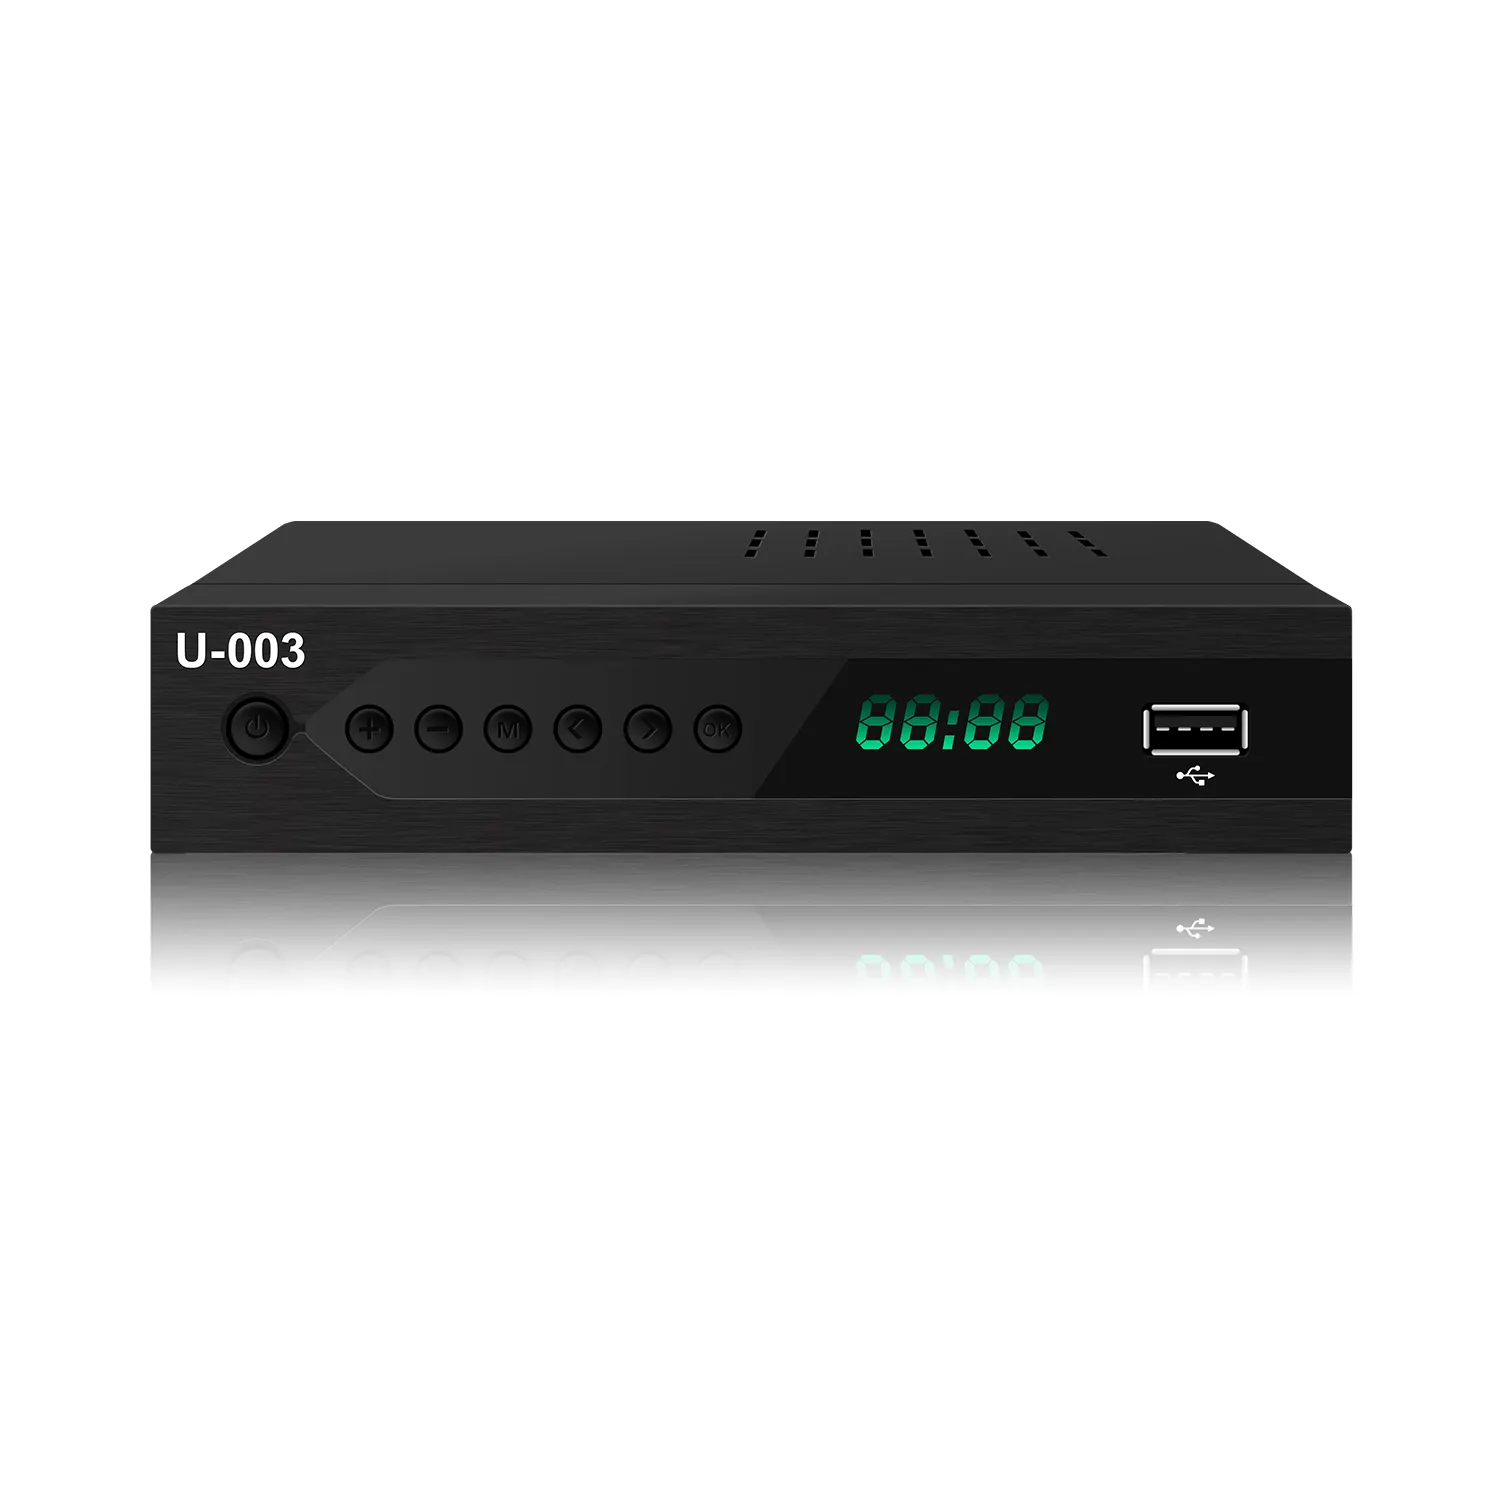 Penerima TV Digital, set top box ATSC 1.0 kotak konversi FTA kotak TV H.264 dekoder hd penerima TV digital ke AS, Meksiko, Kanada